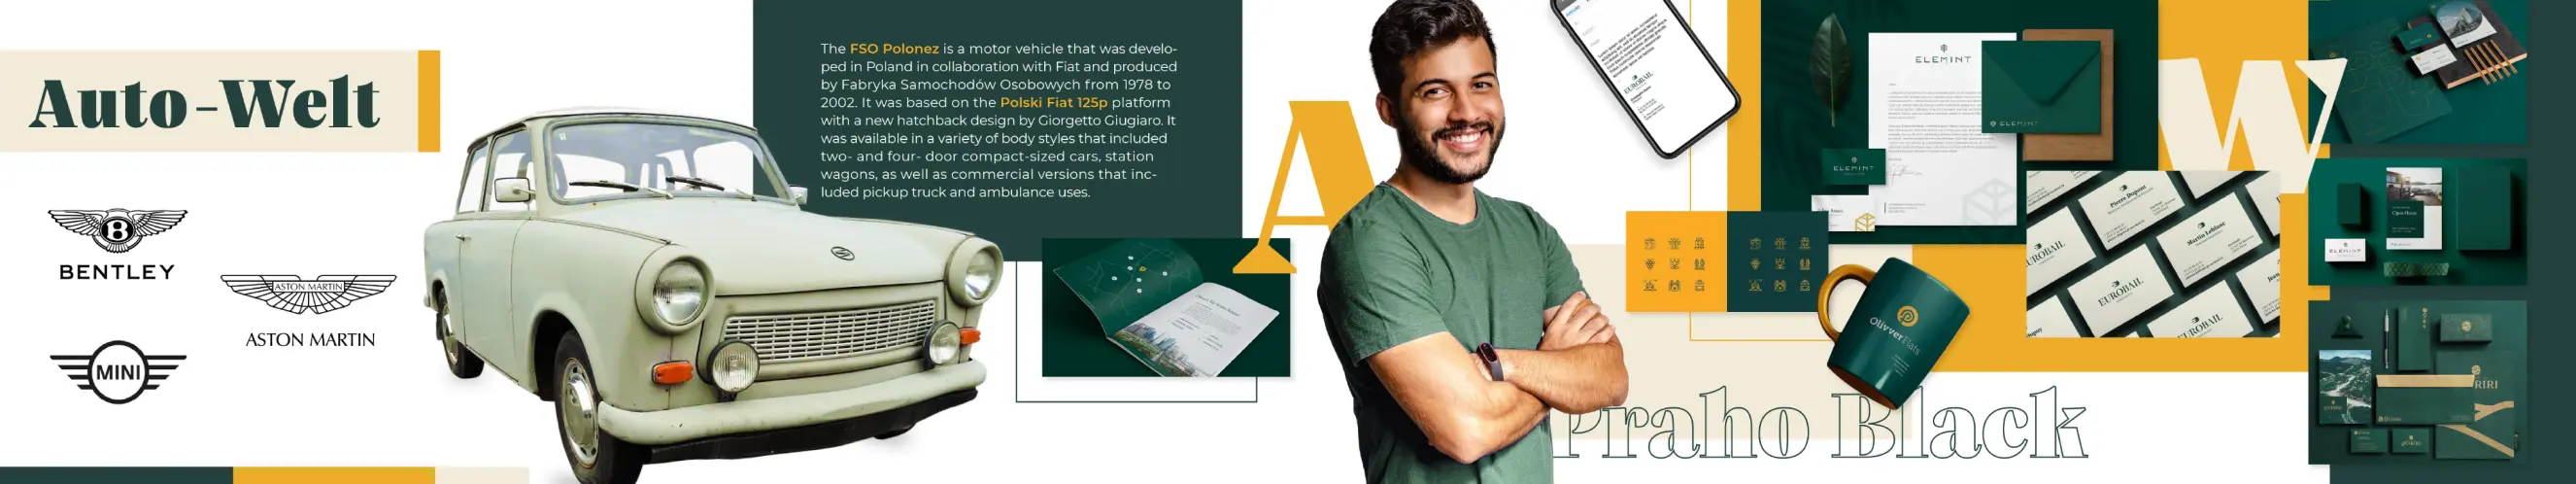 Zbiór elementów interfejsu, kolorów, typografii, zdjęć pokazujących zielono-żółty i vinted styl wizualny dla marki Auto-Welt